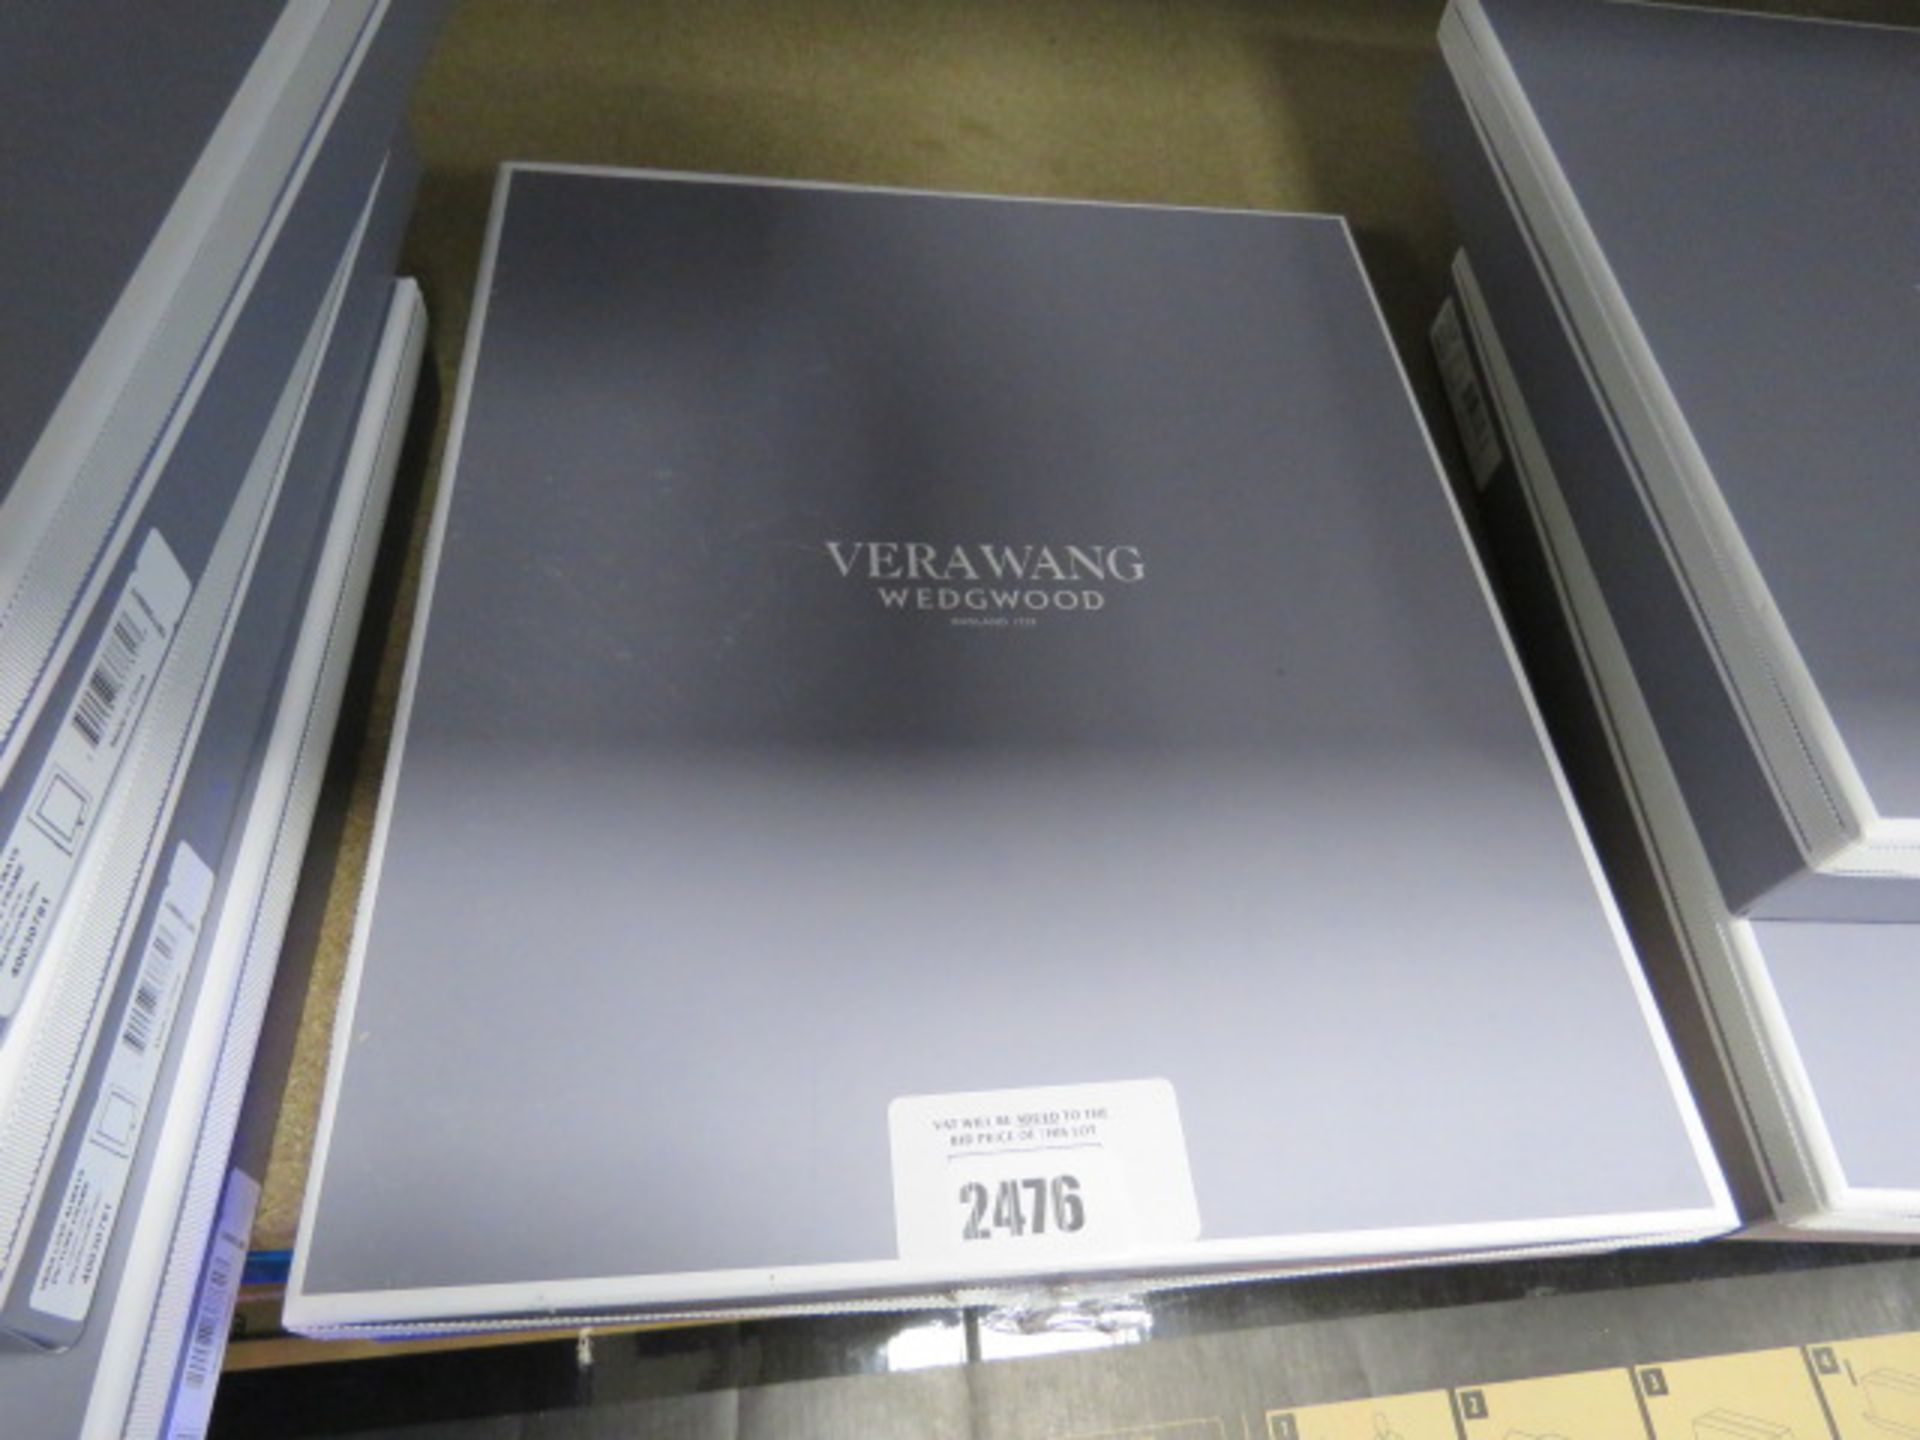 Vera Wang wedgwood 8x10 photo frame in box